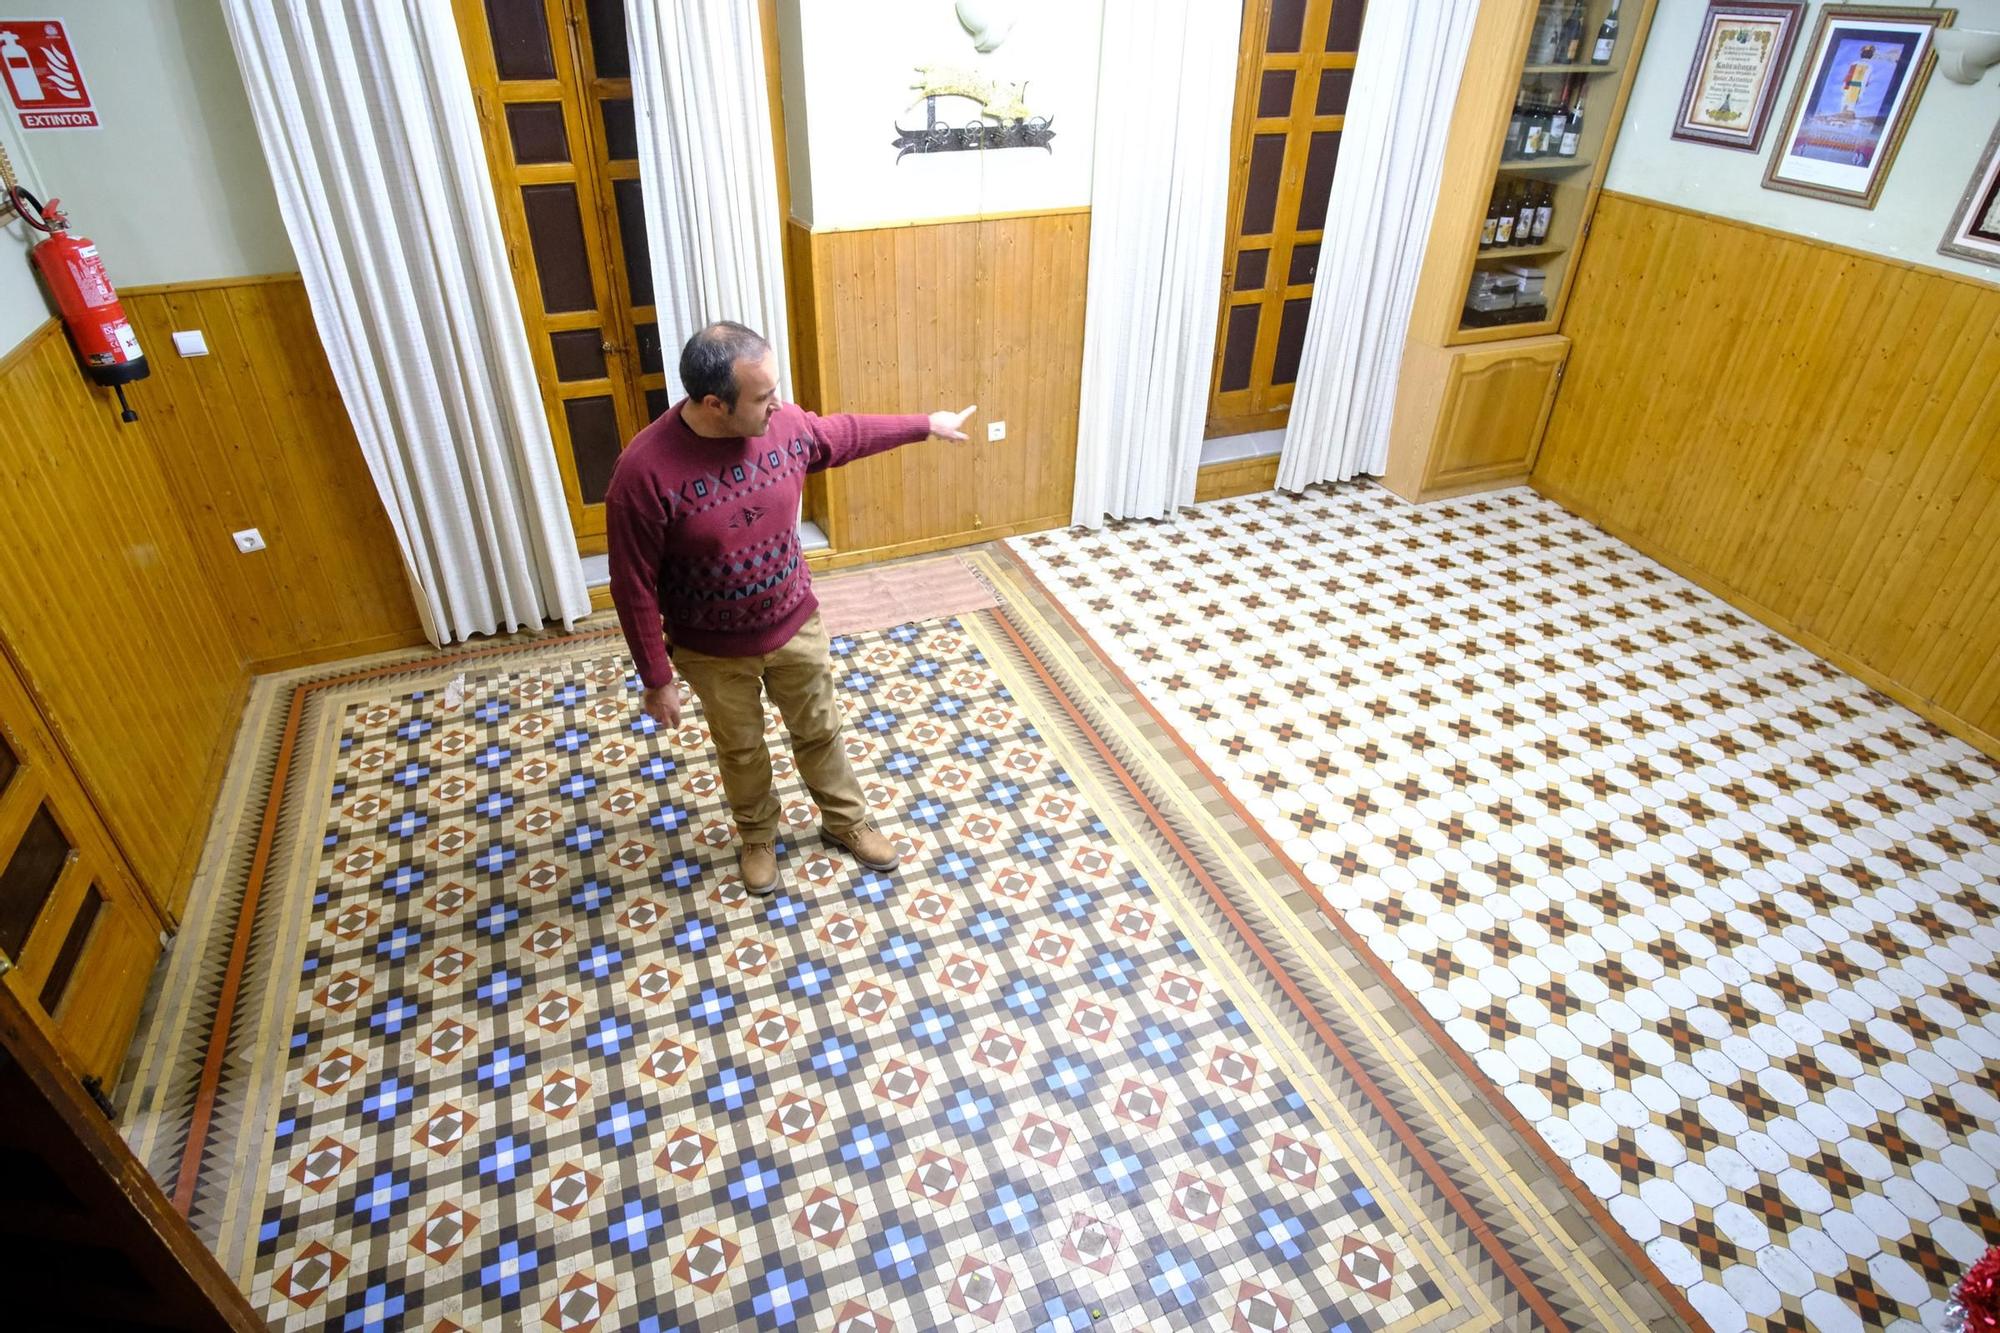 Así son los curiosos suelos de mosaicos de cerámica Nolla de Villena